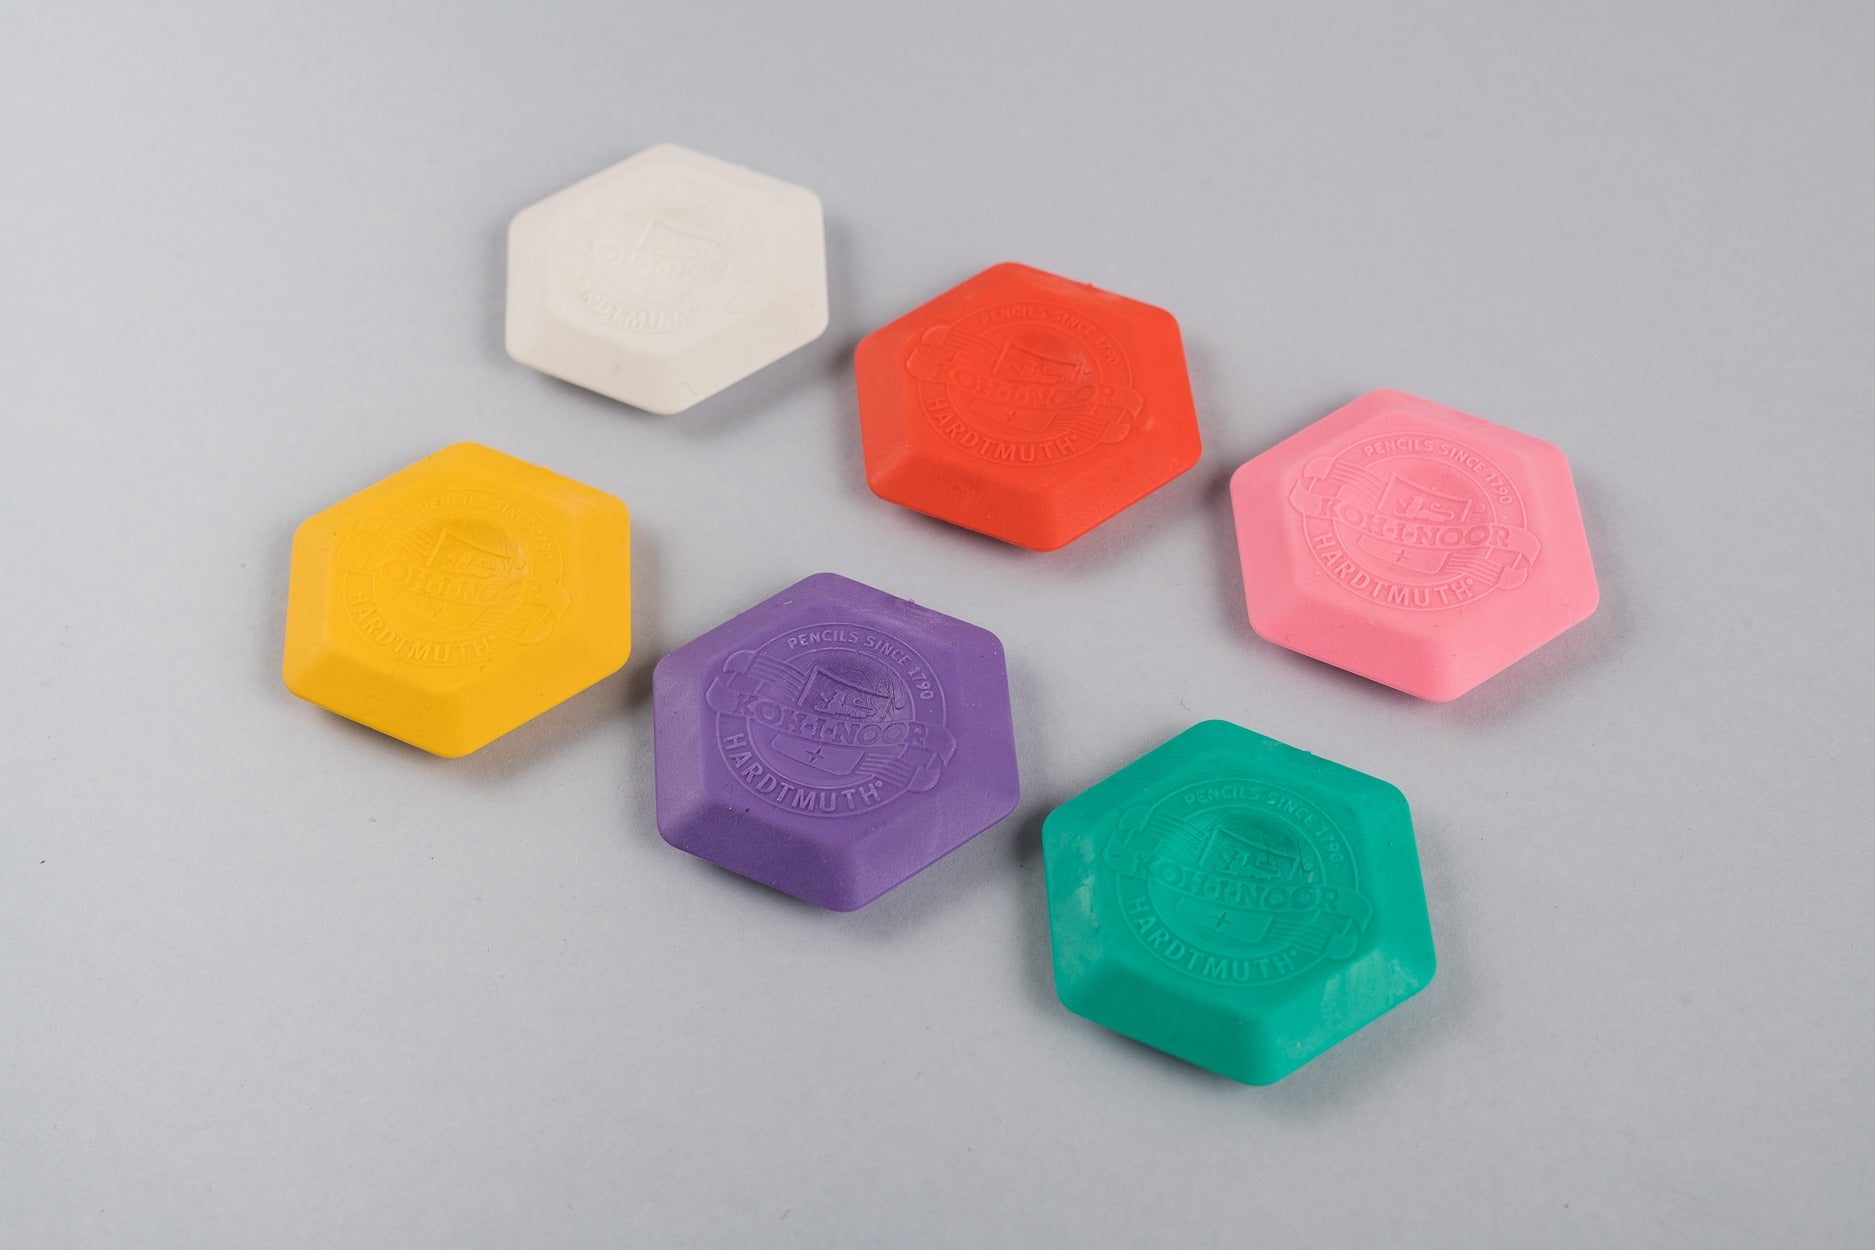 Hexagon rubber